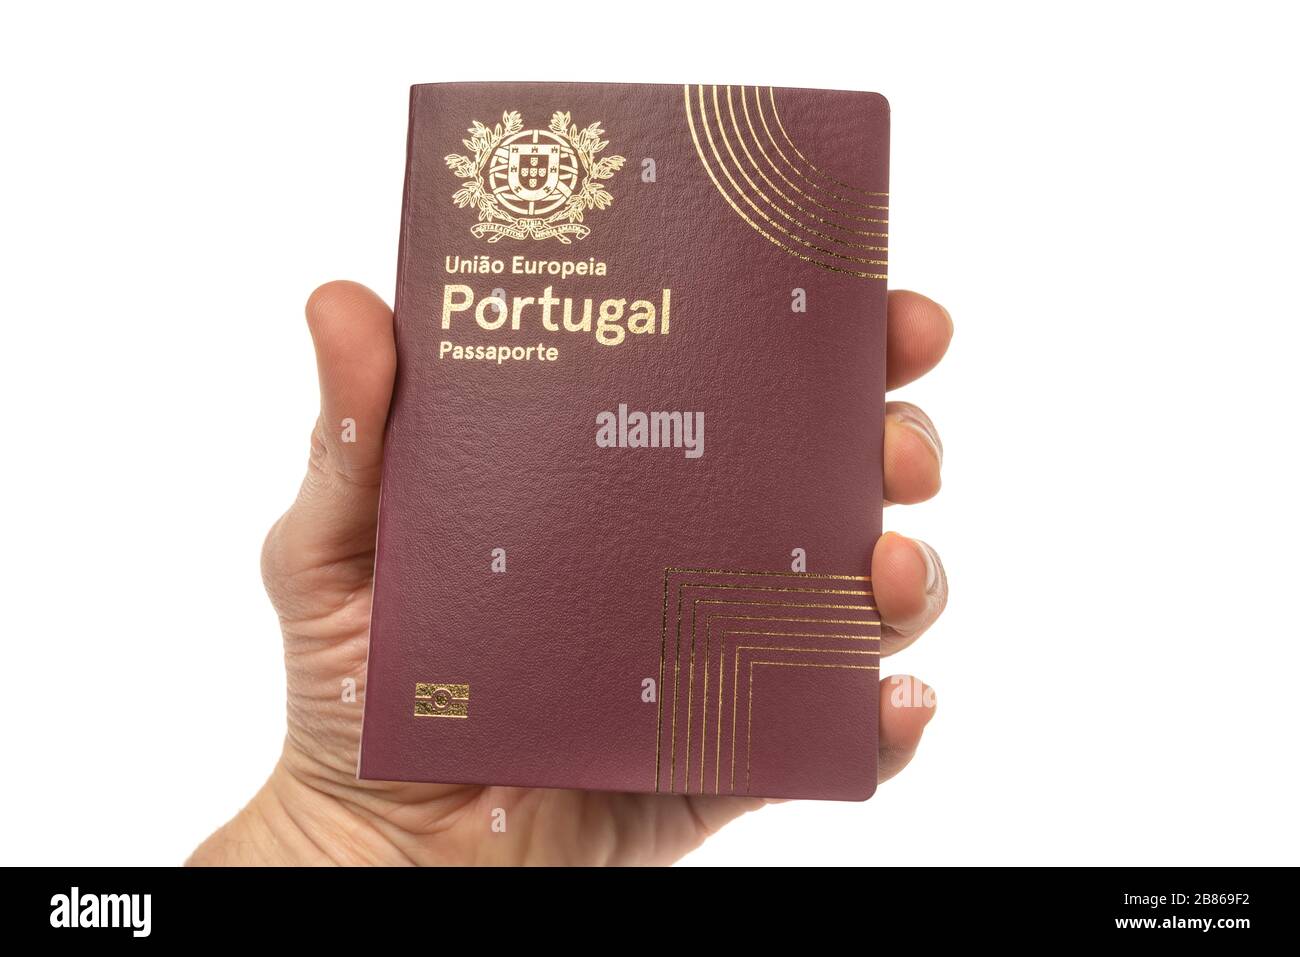 Passaporto di viaggio portoghese in mano in primo piano. Su sfondo bianco Foto Stock